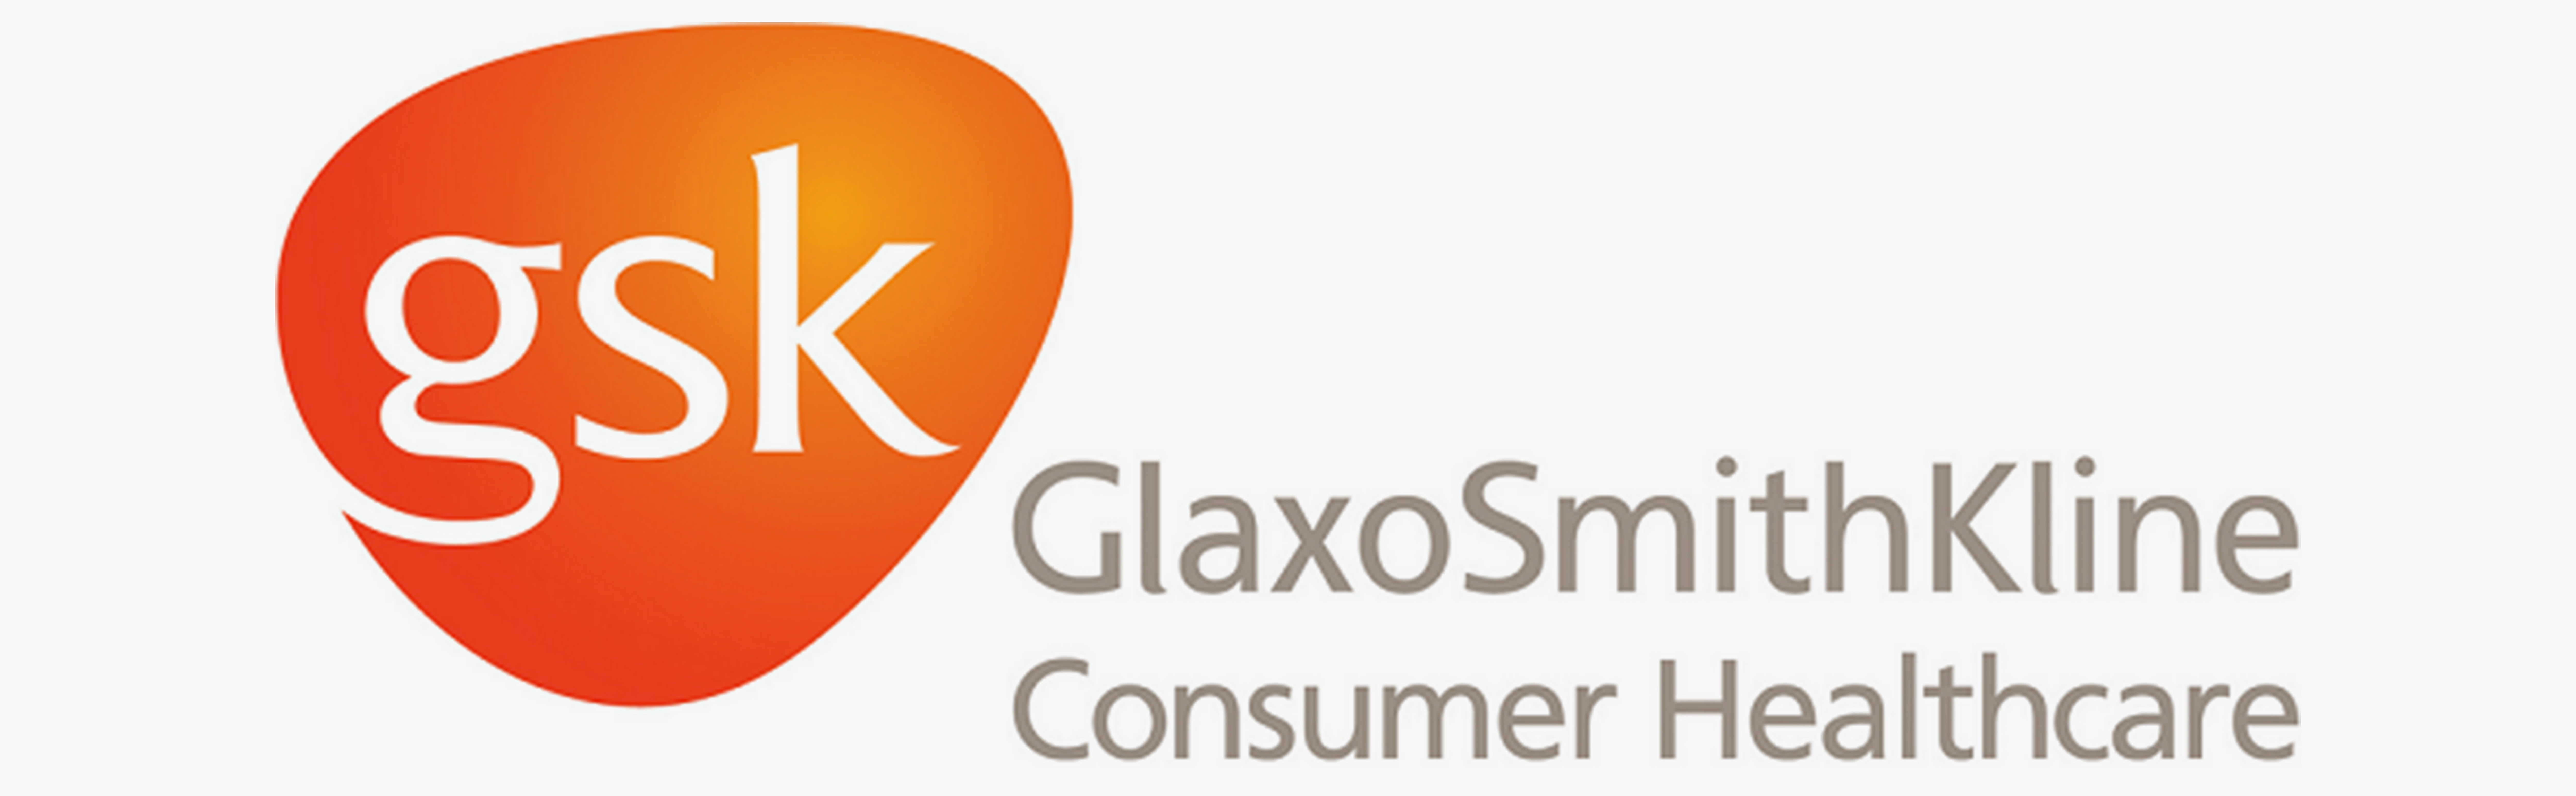 GlaxoSmithKline Consumer Healthcare